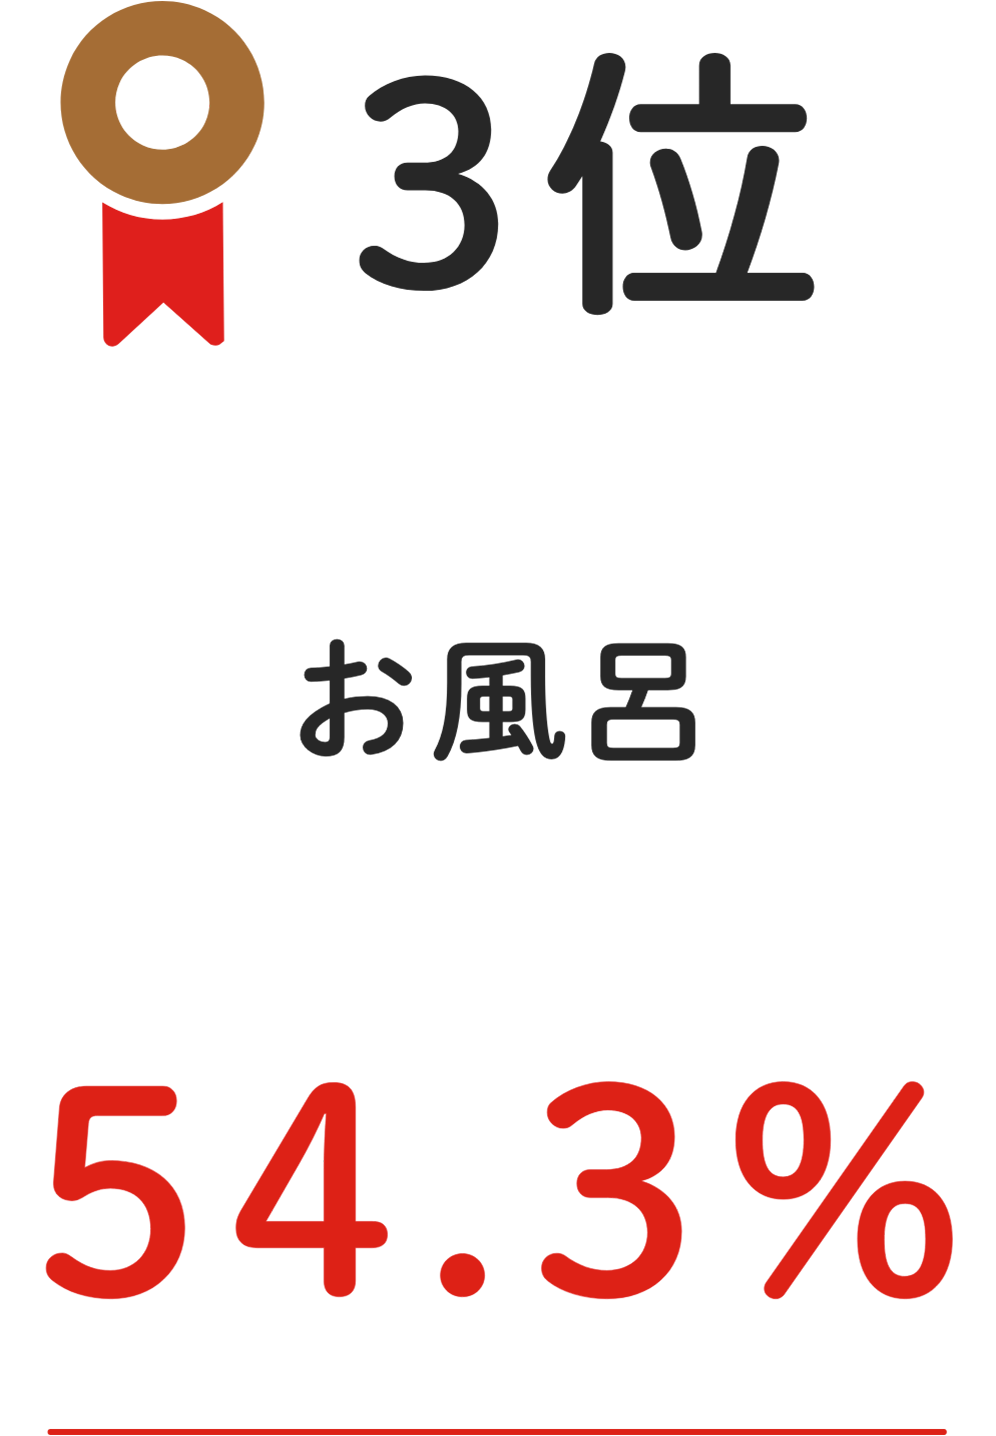 3位 お⾵呂 54.3%